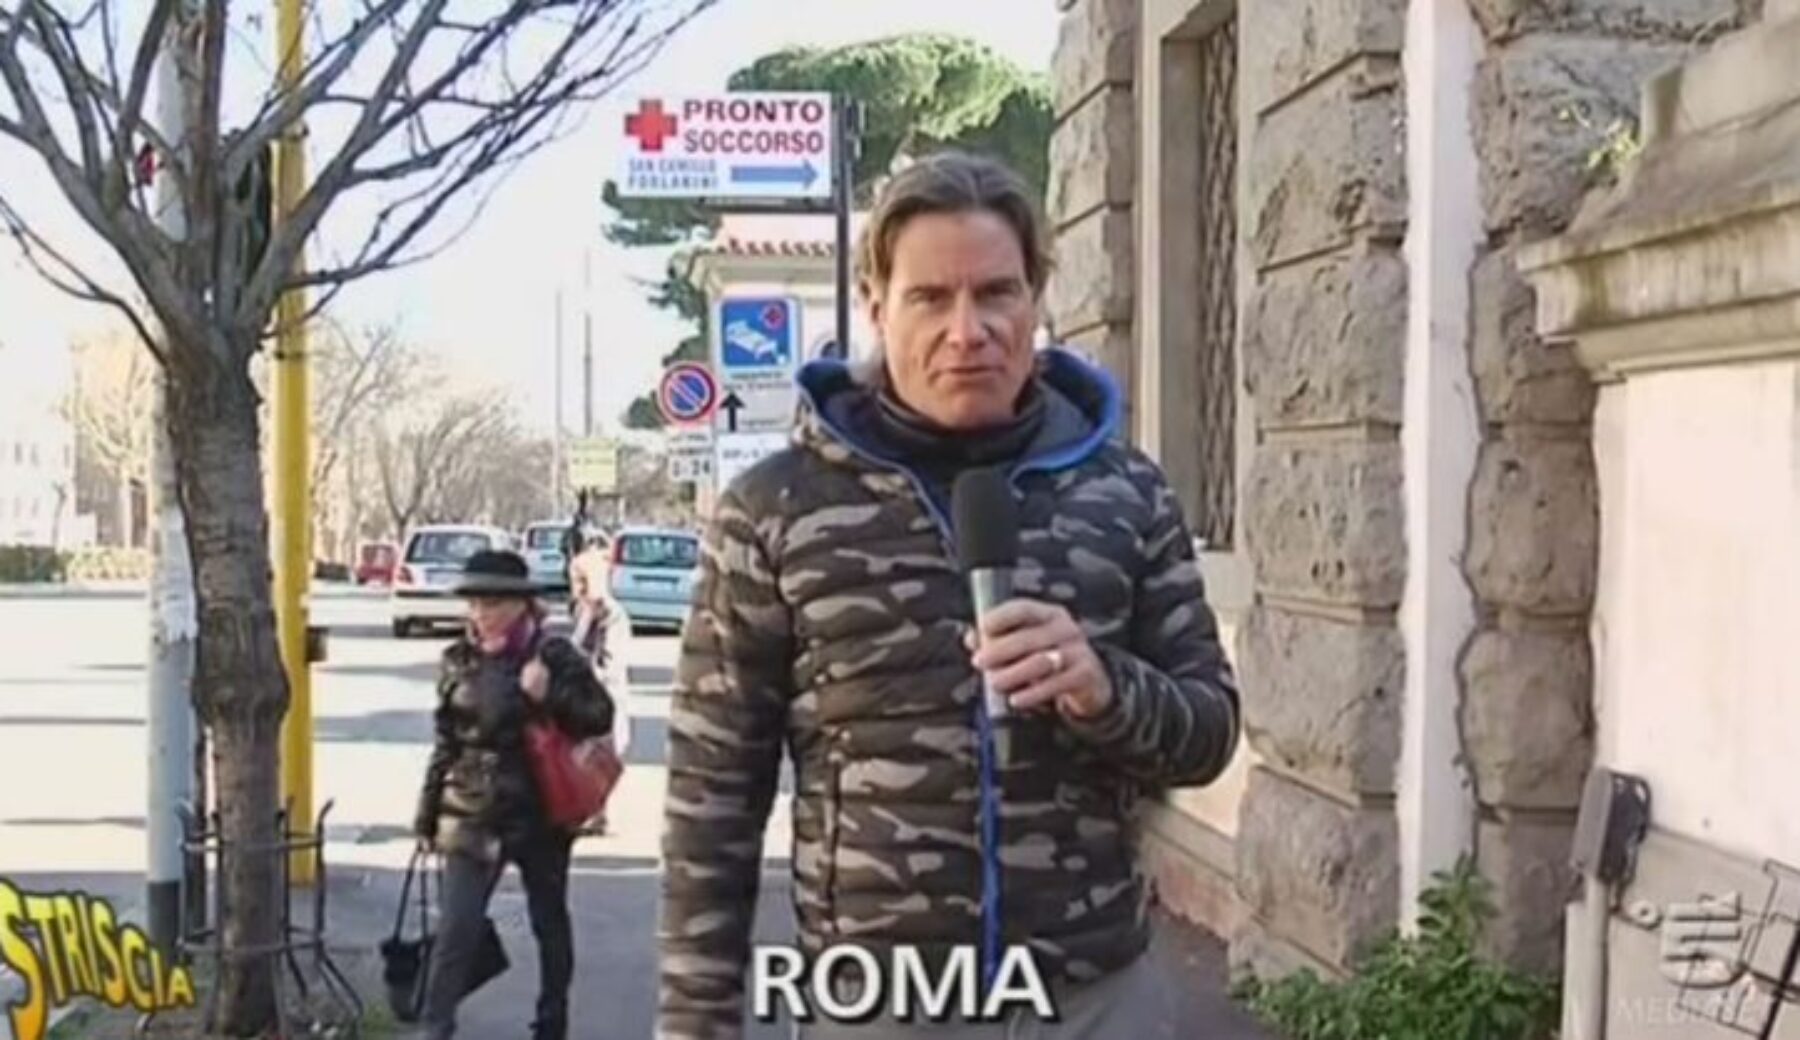 Roma, Pronto Soccorso nel caos: la testimonianza shock dal San Camillo